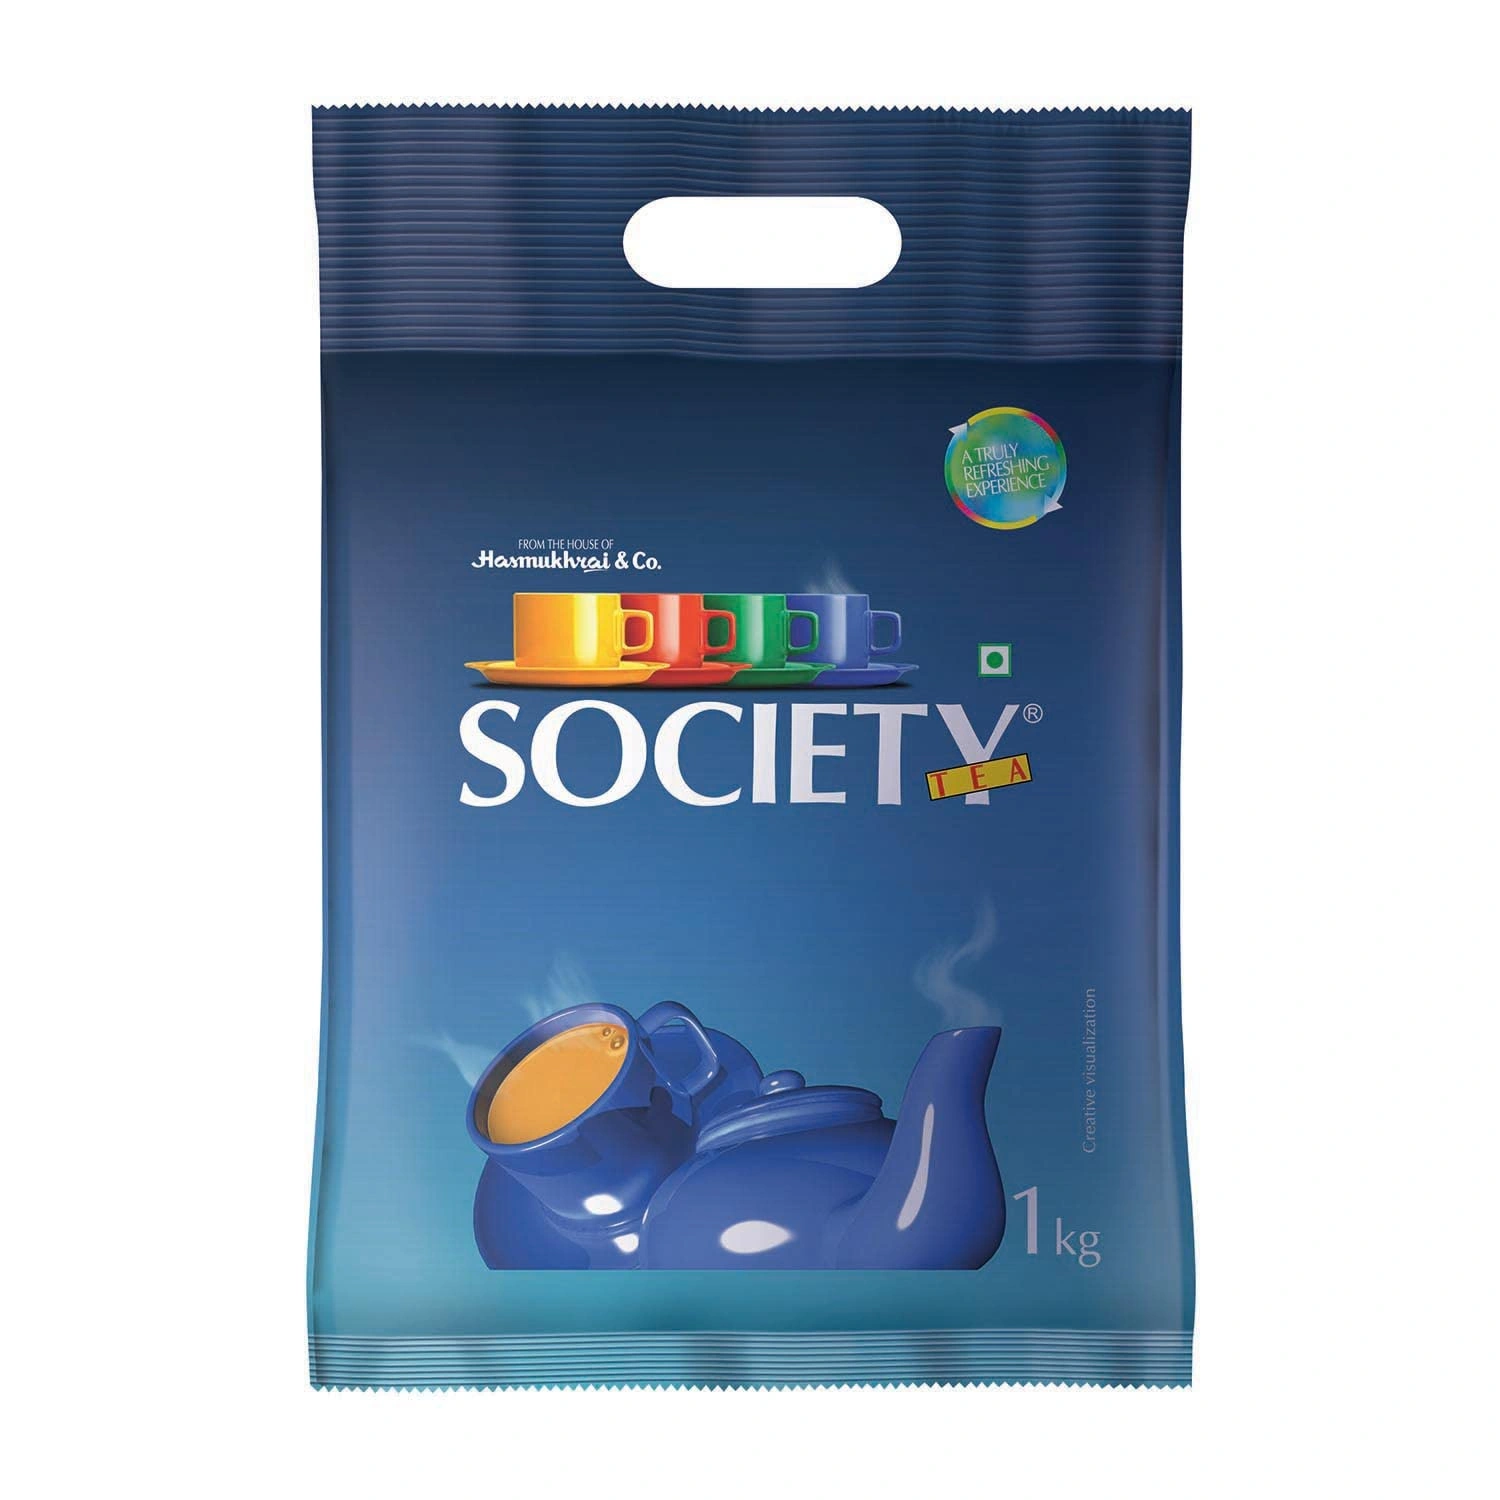 Society Tea Pouch 1 Kg-society-tea-pouch-1-kg